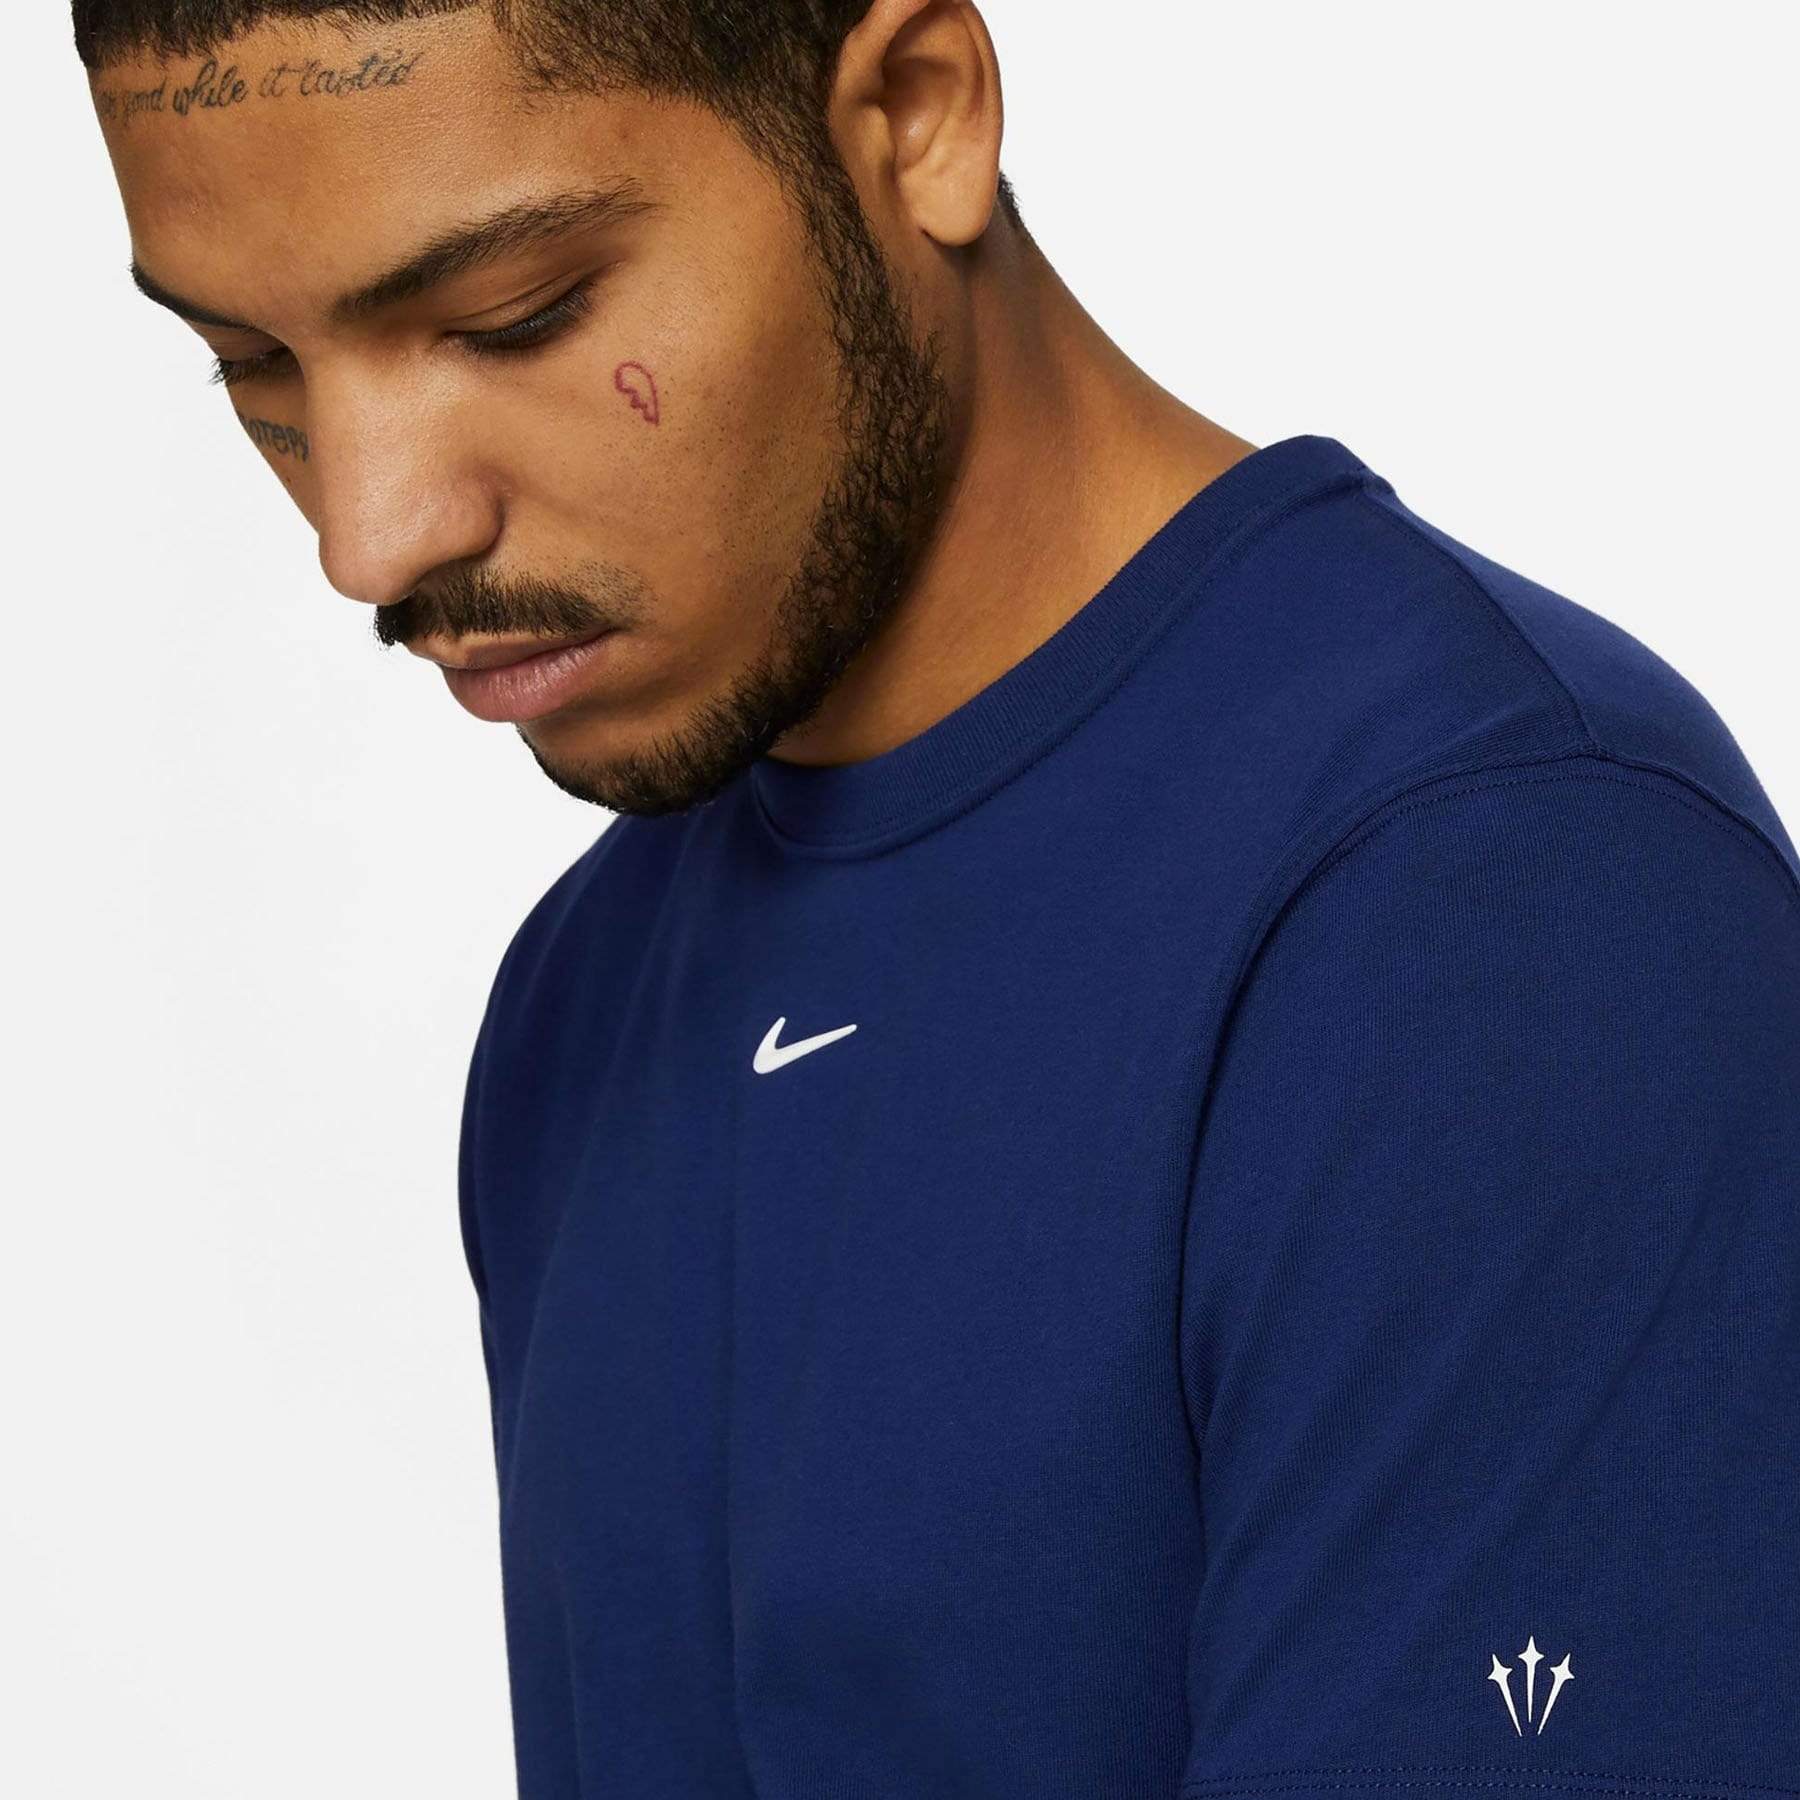 Nike x Drake NOCTA Cardinal Stock T-shirt Navy – GlobalSneakers